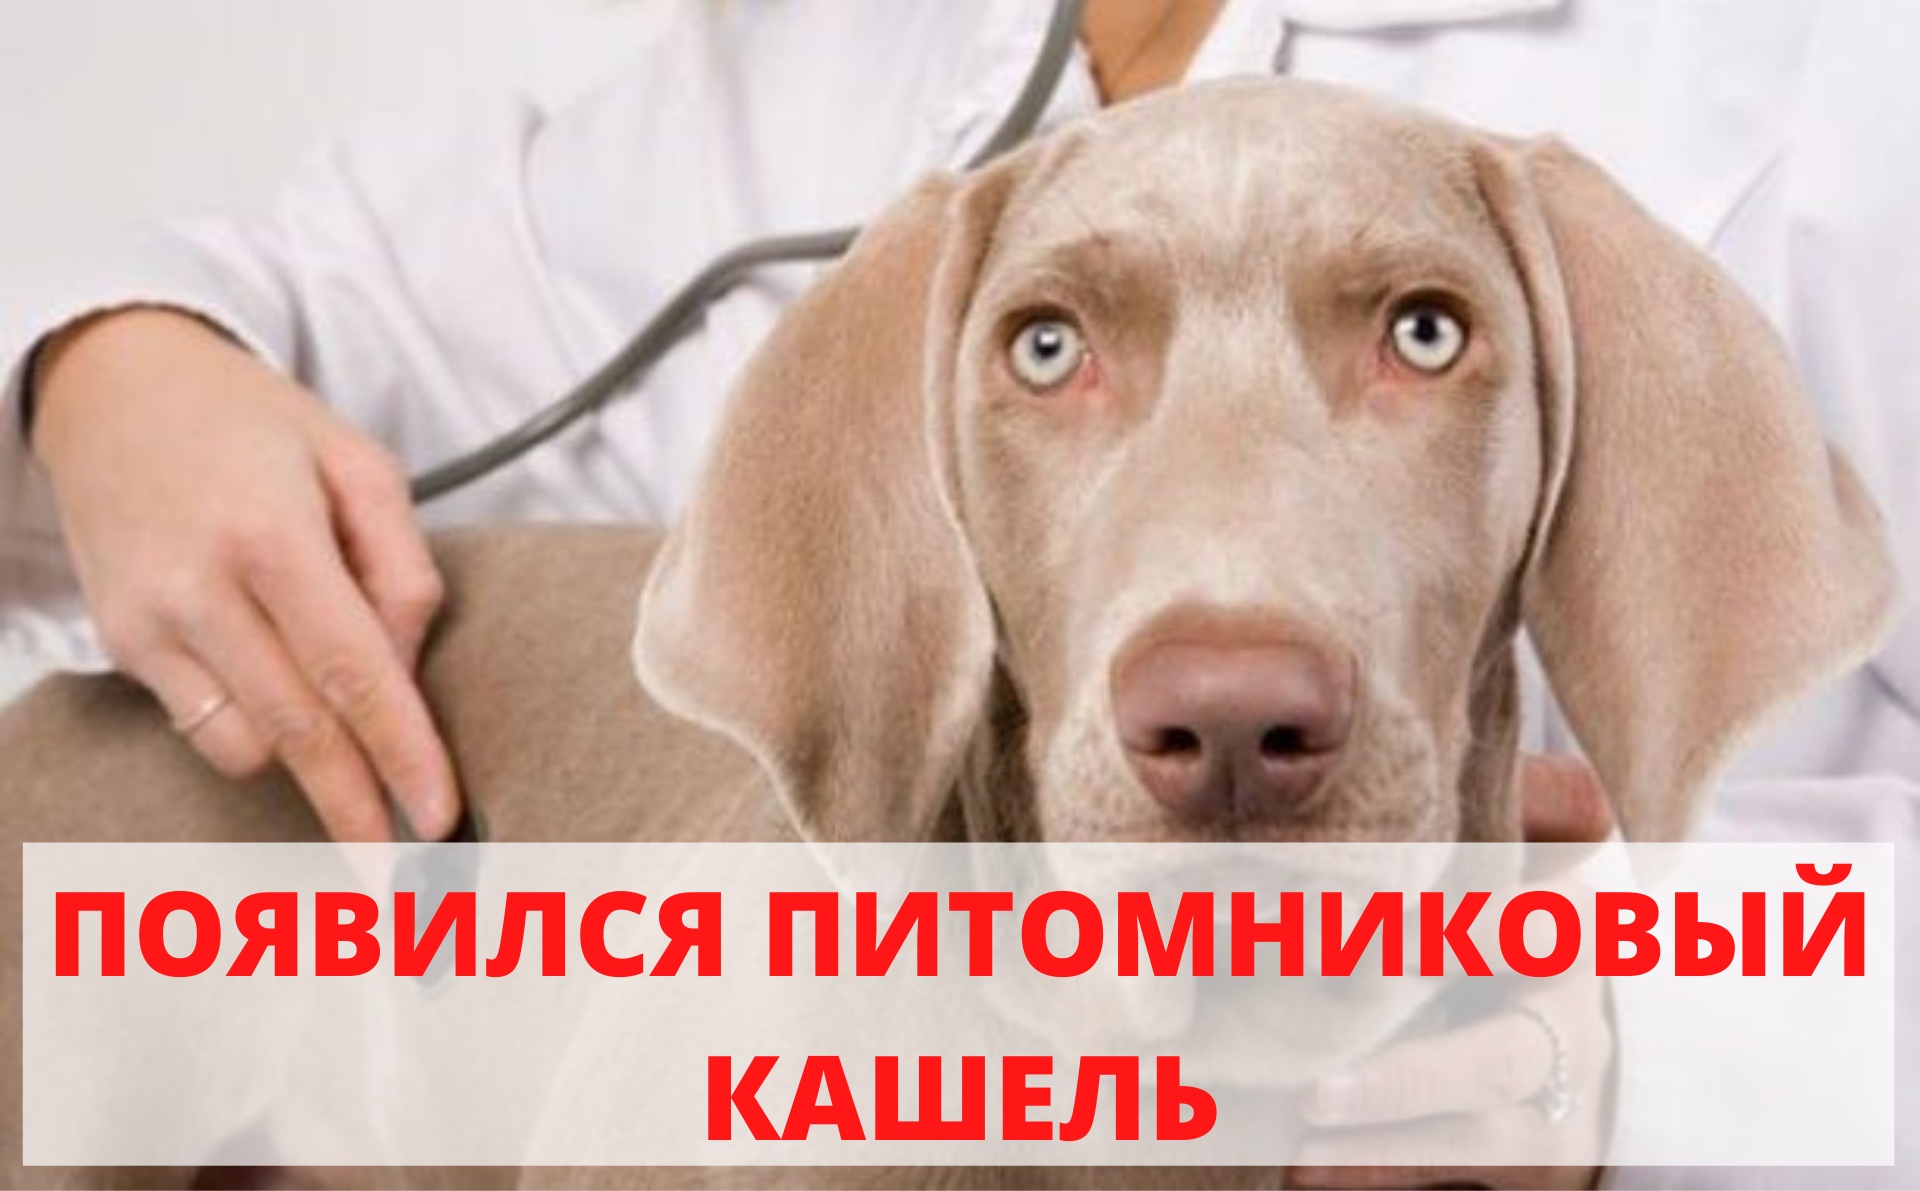 Бордетеллиоз или вольерный кашель у собак — симптомы и лечение